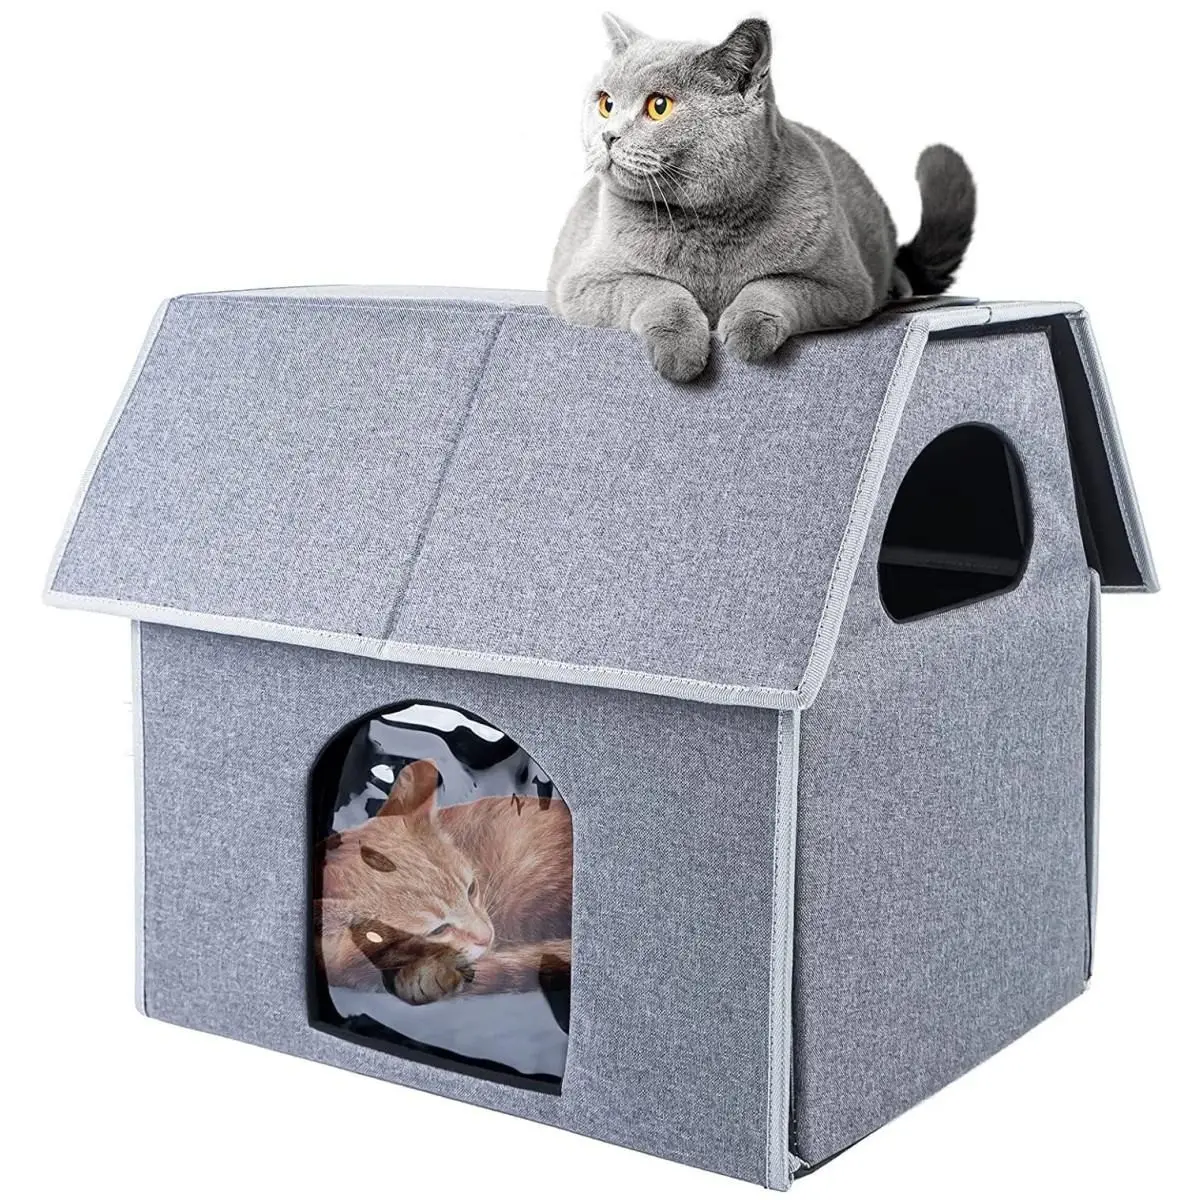 Neues Outdoor Cat House Wasserdichtes Katzen bett Wind dicht Cattery Winter Warm Outdoor Hundehütte Abnehmbar